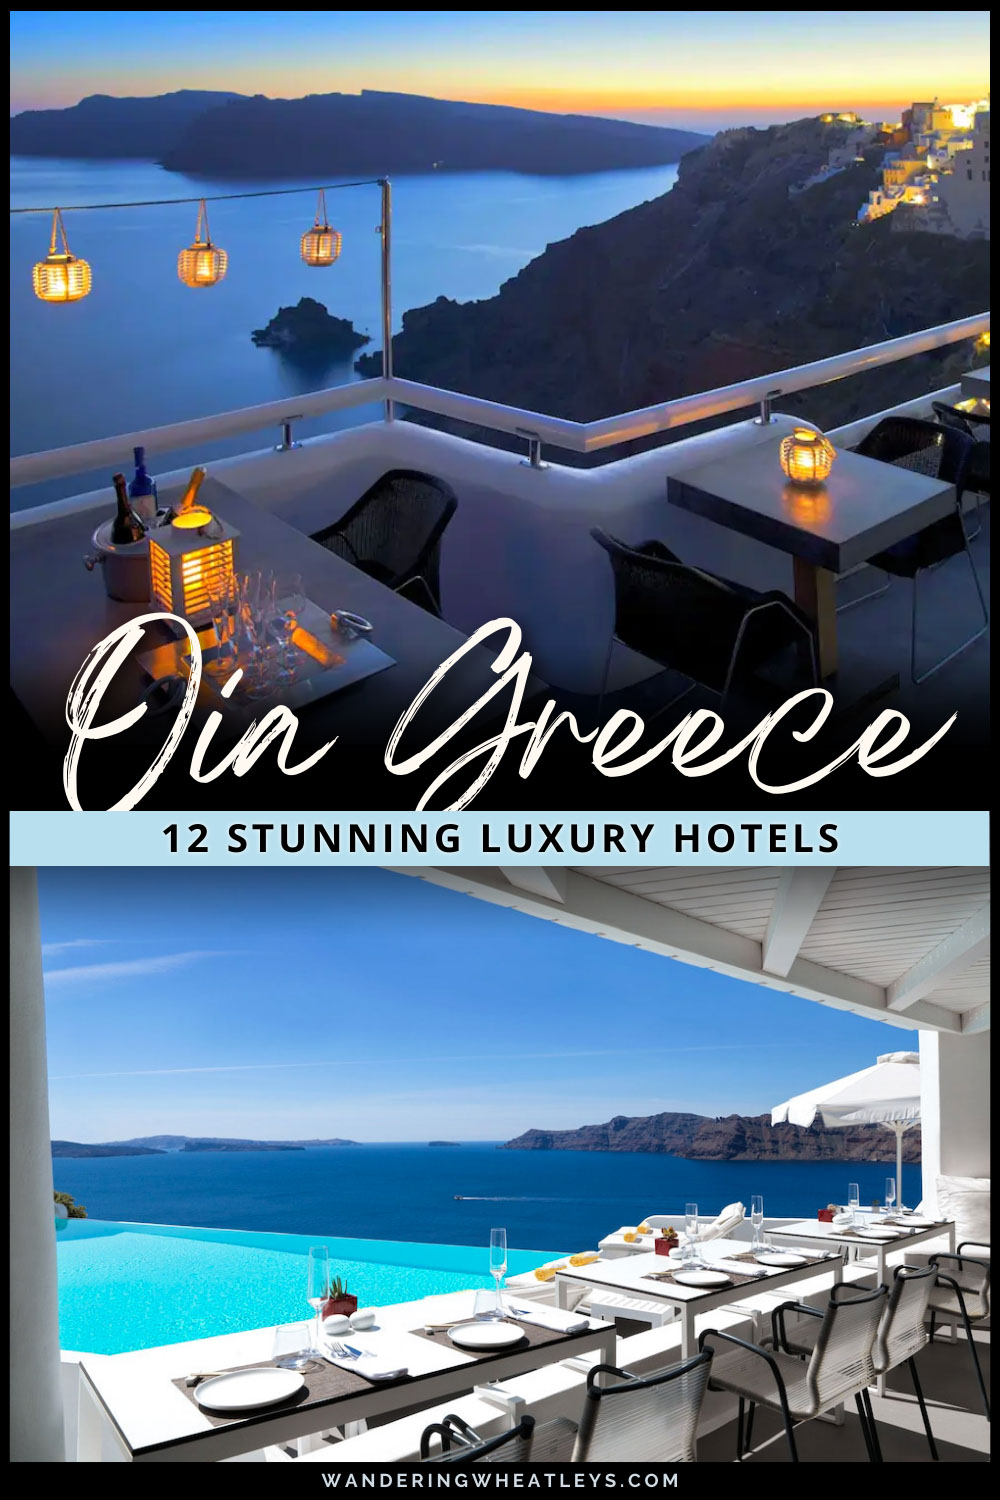 Cool Luxury Hotels in Oia, Greece